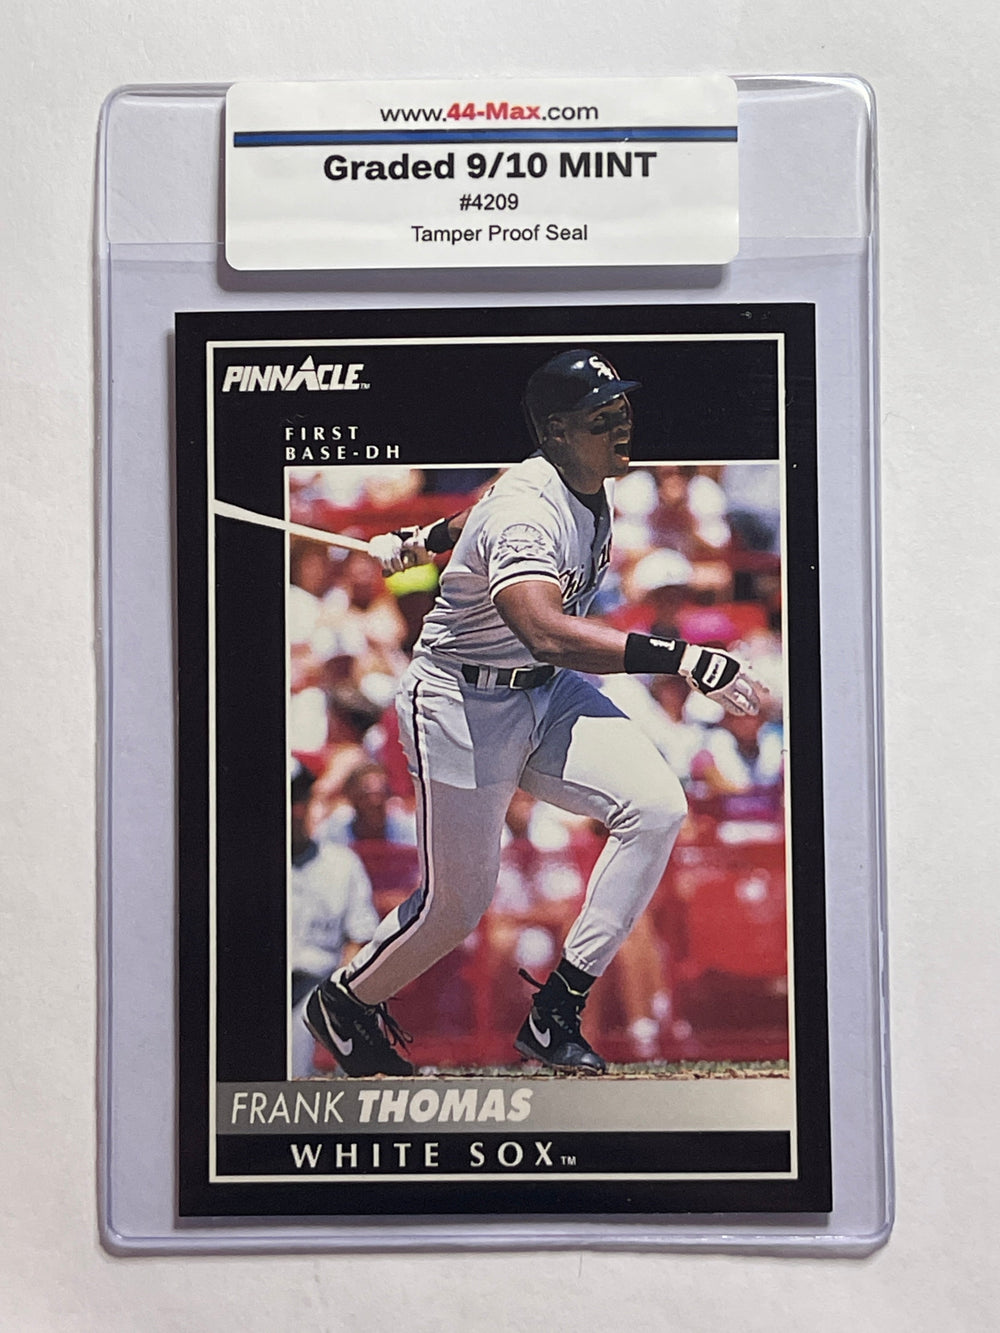 Frank Thomas 1992 Pinnacle Baseball Card. 44-Max 9/10 Mint #4209